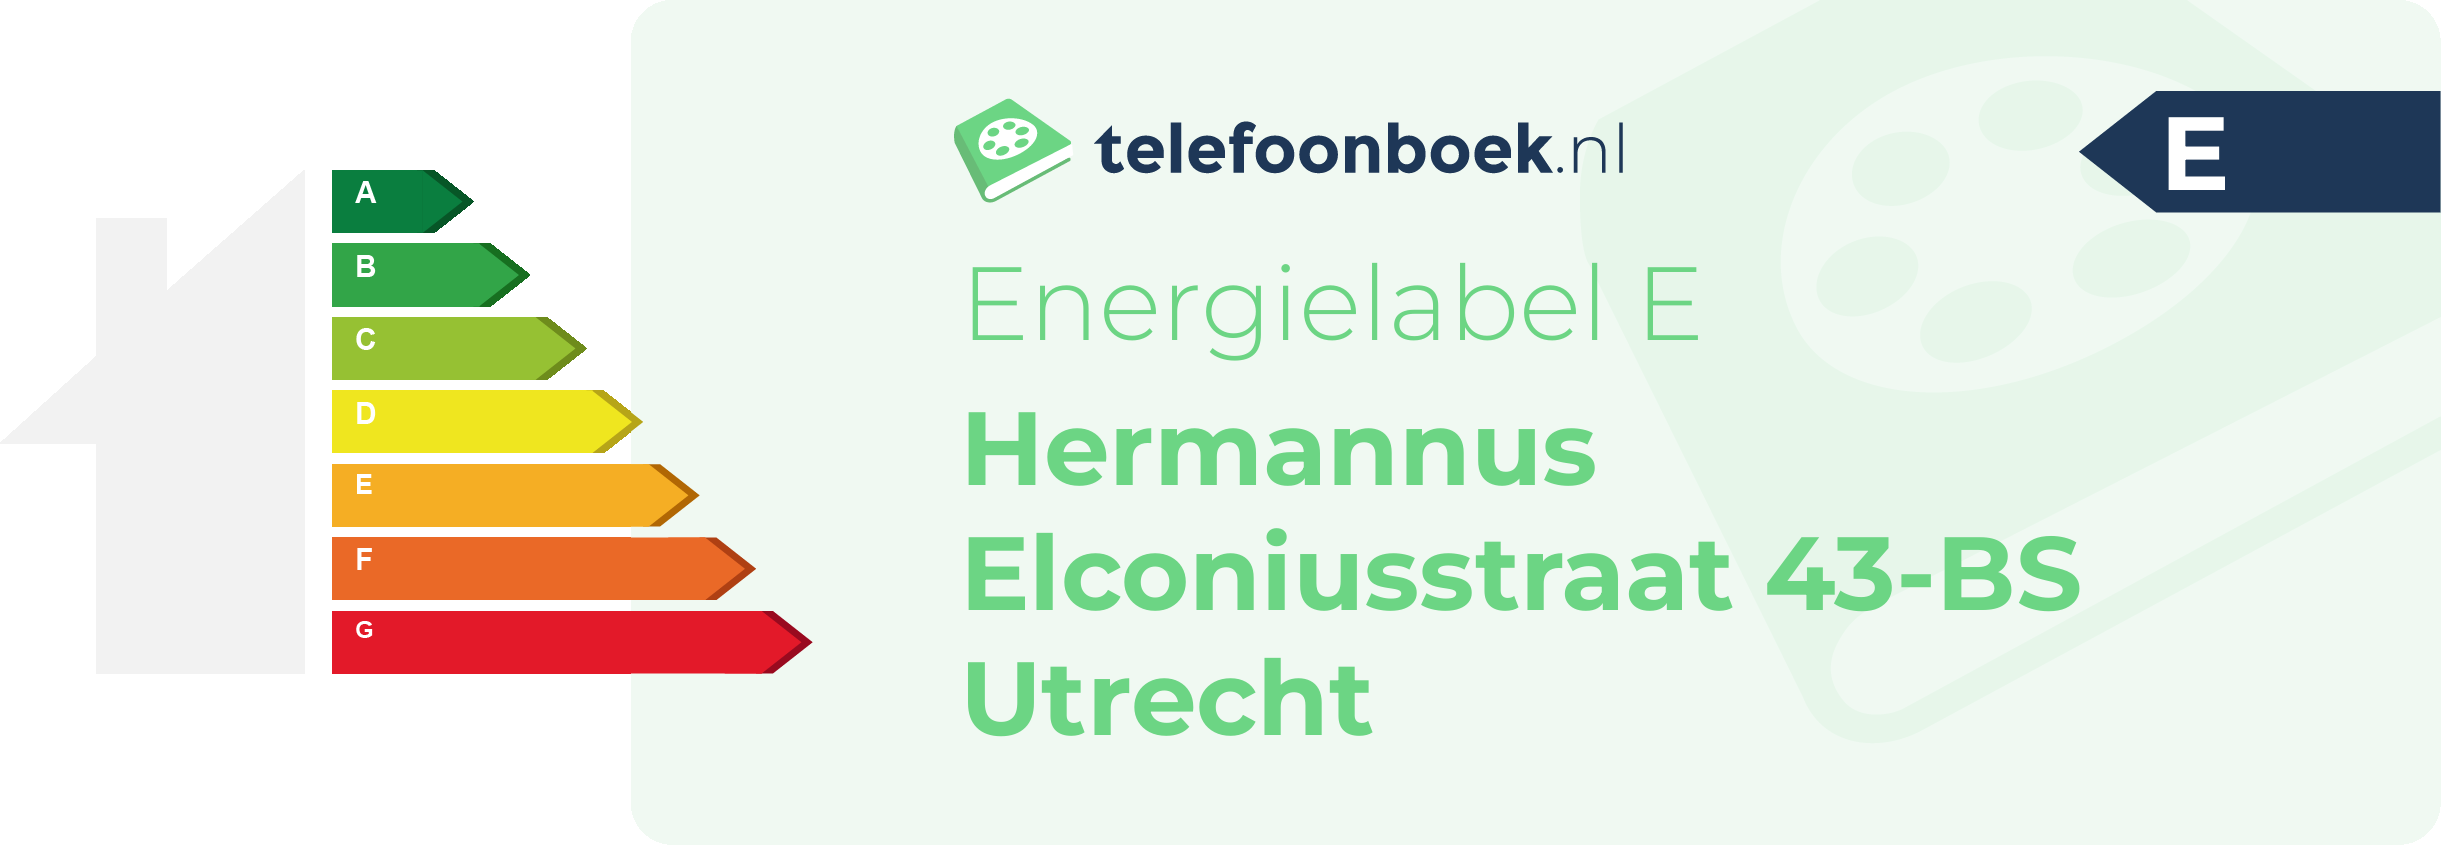 Energielabel Hermannus Elconiusstraat 43-BS Utrecht